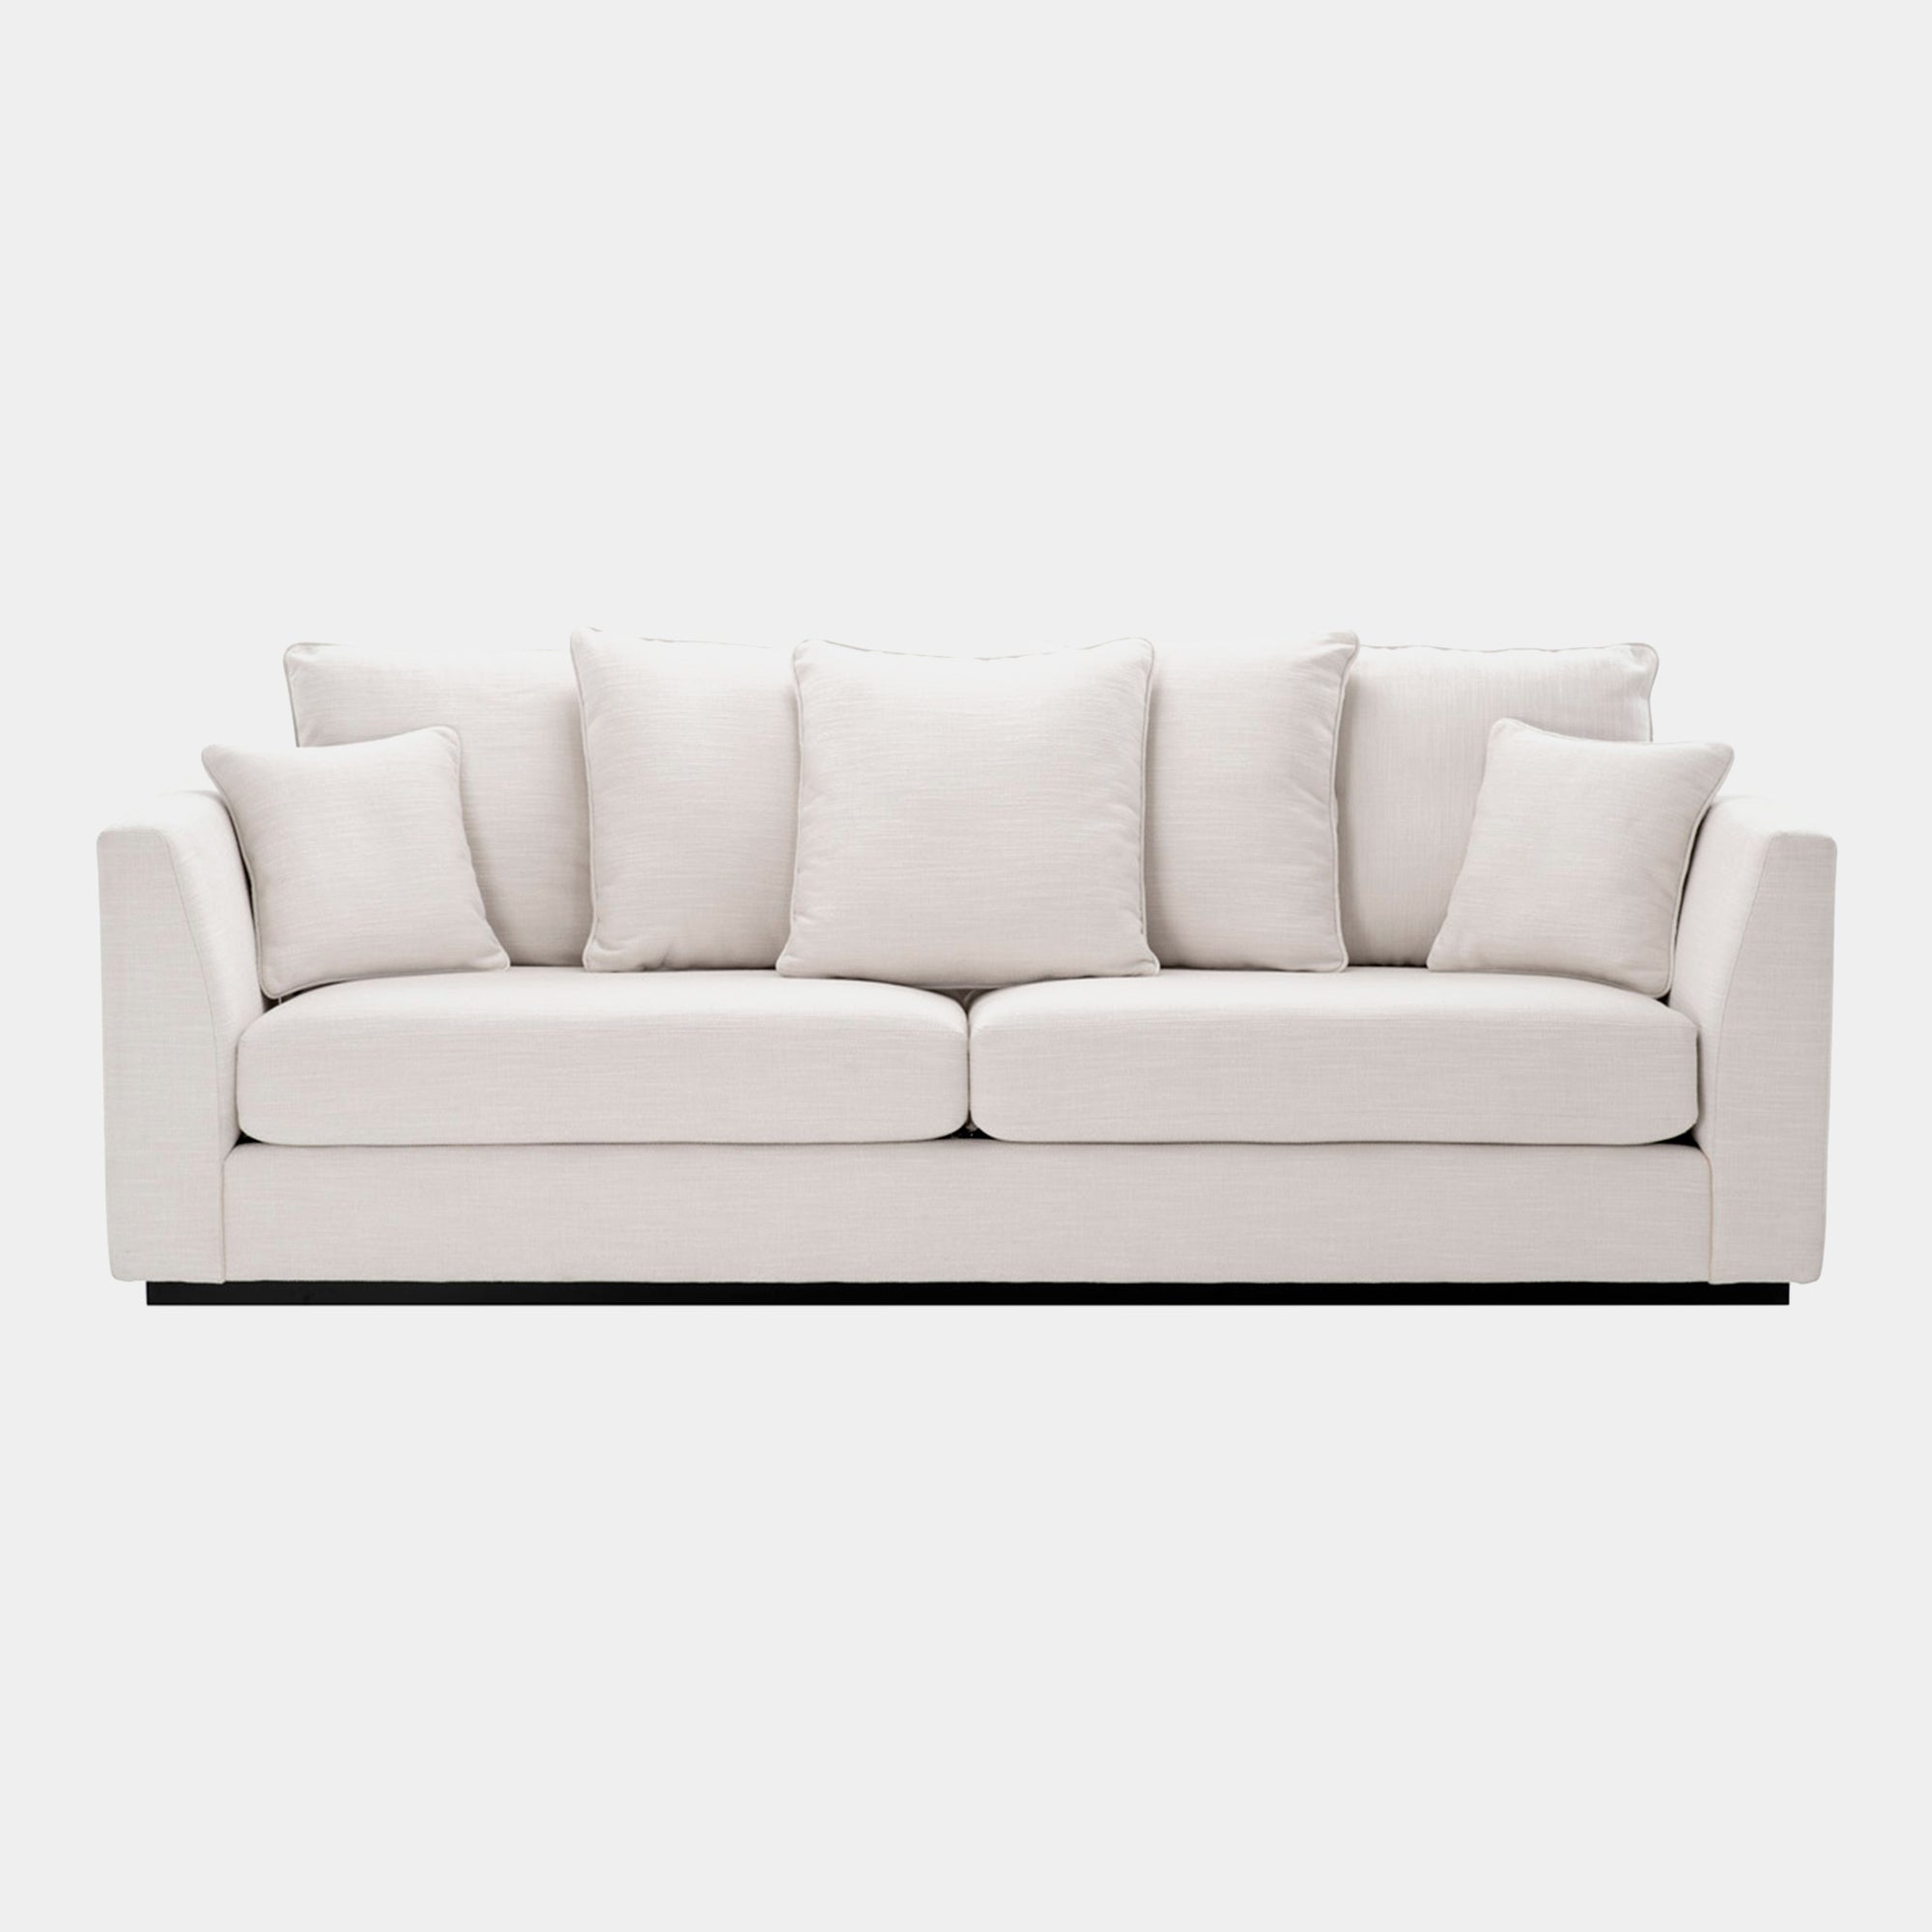 Eichholtz Taylor - Sofa In Avalon White With Black Frame